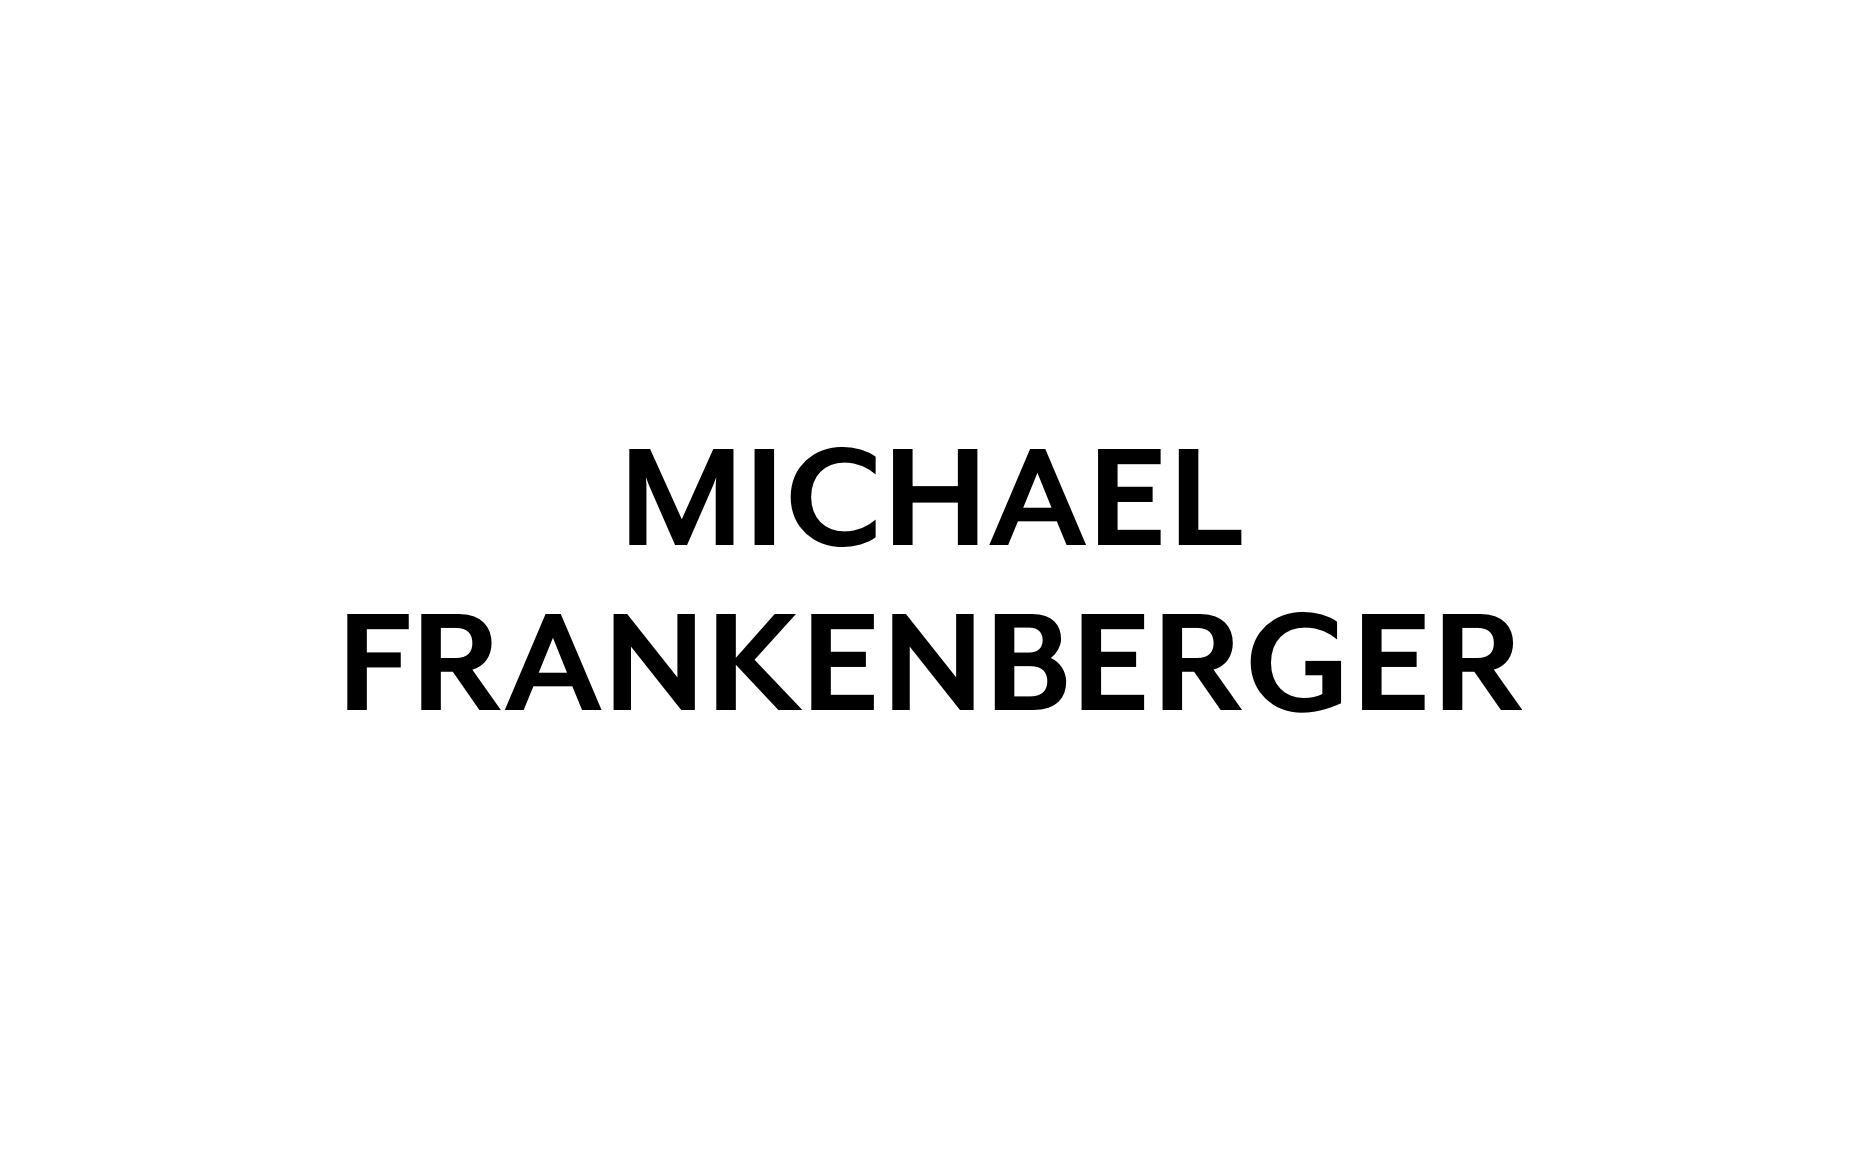 Michael Frankenberger